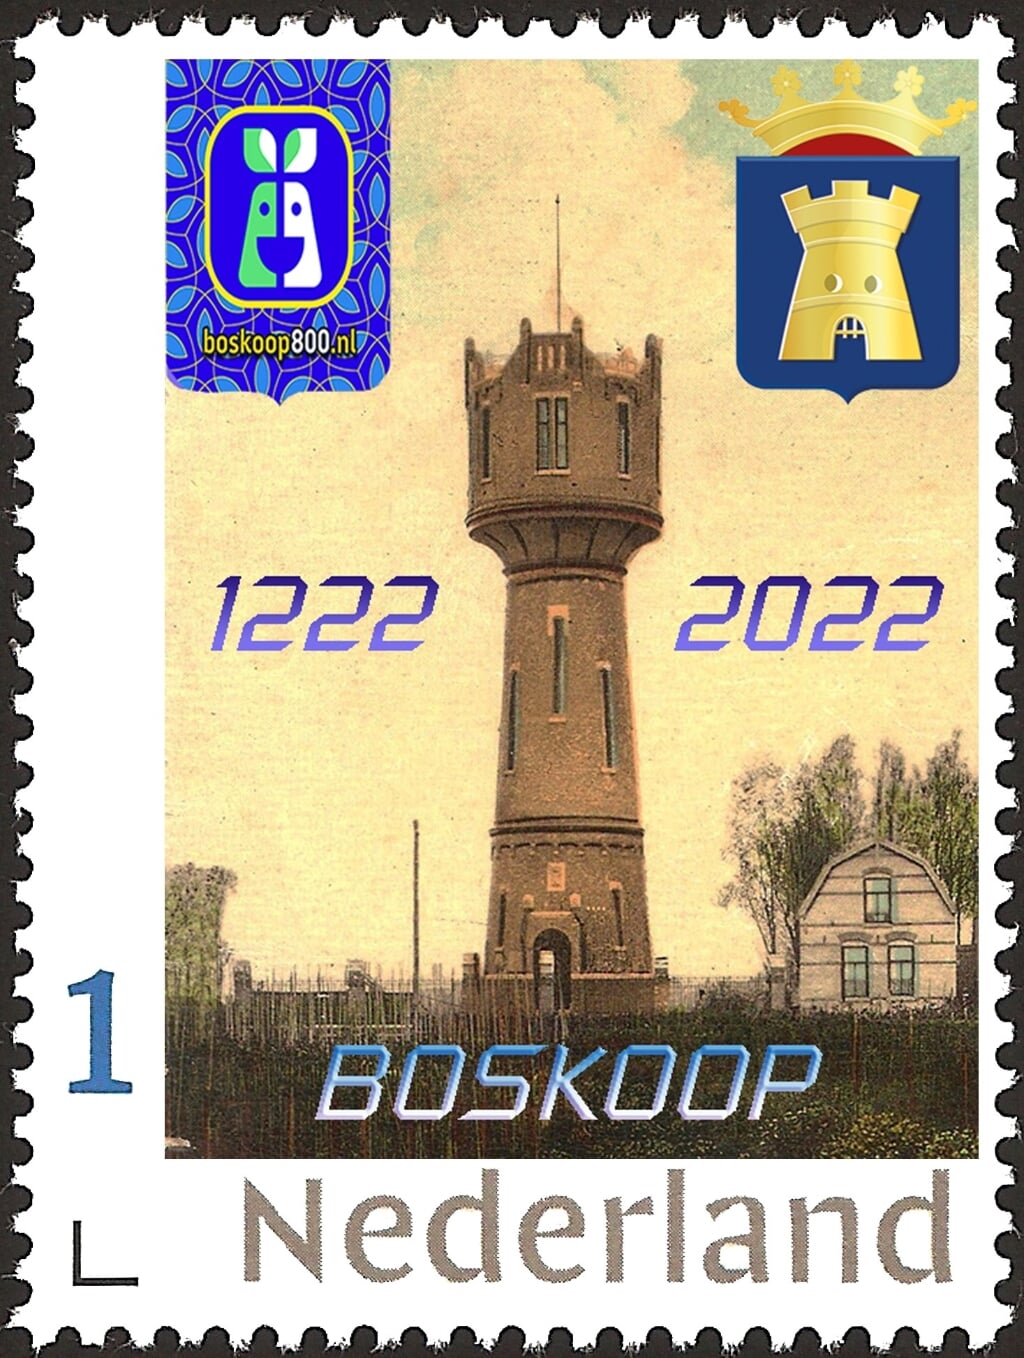 Postzegelvereniging NVPV Boskoop heeft een Boskoopse postzegel uitgegeven. 